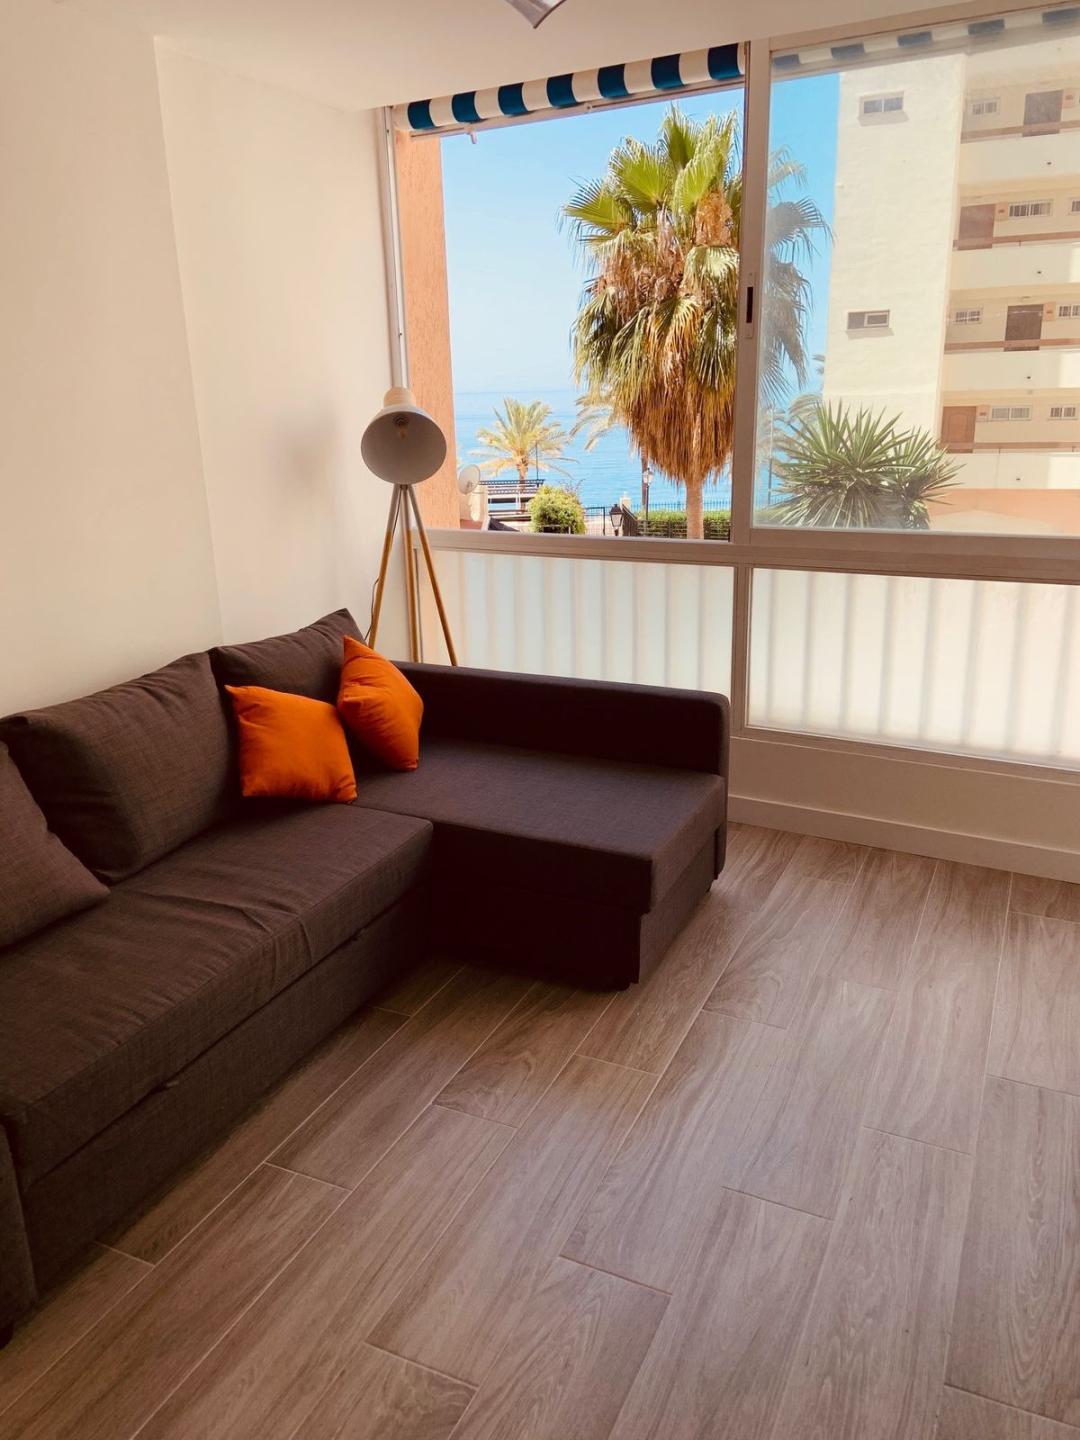 Apartment Ground Floor in Marbella